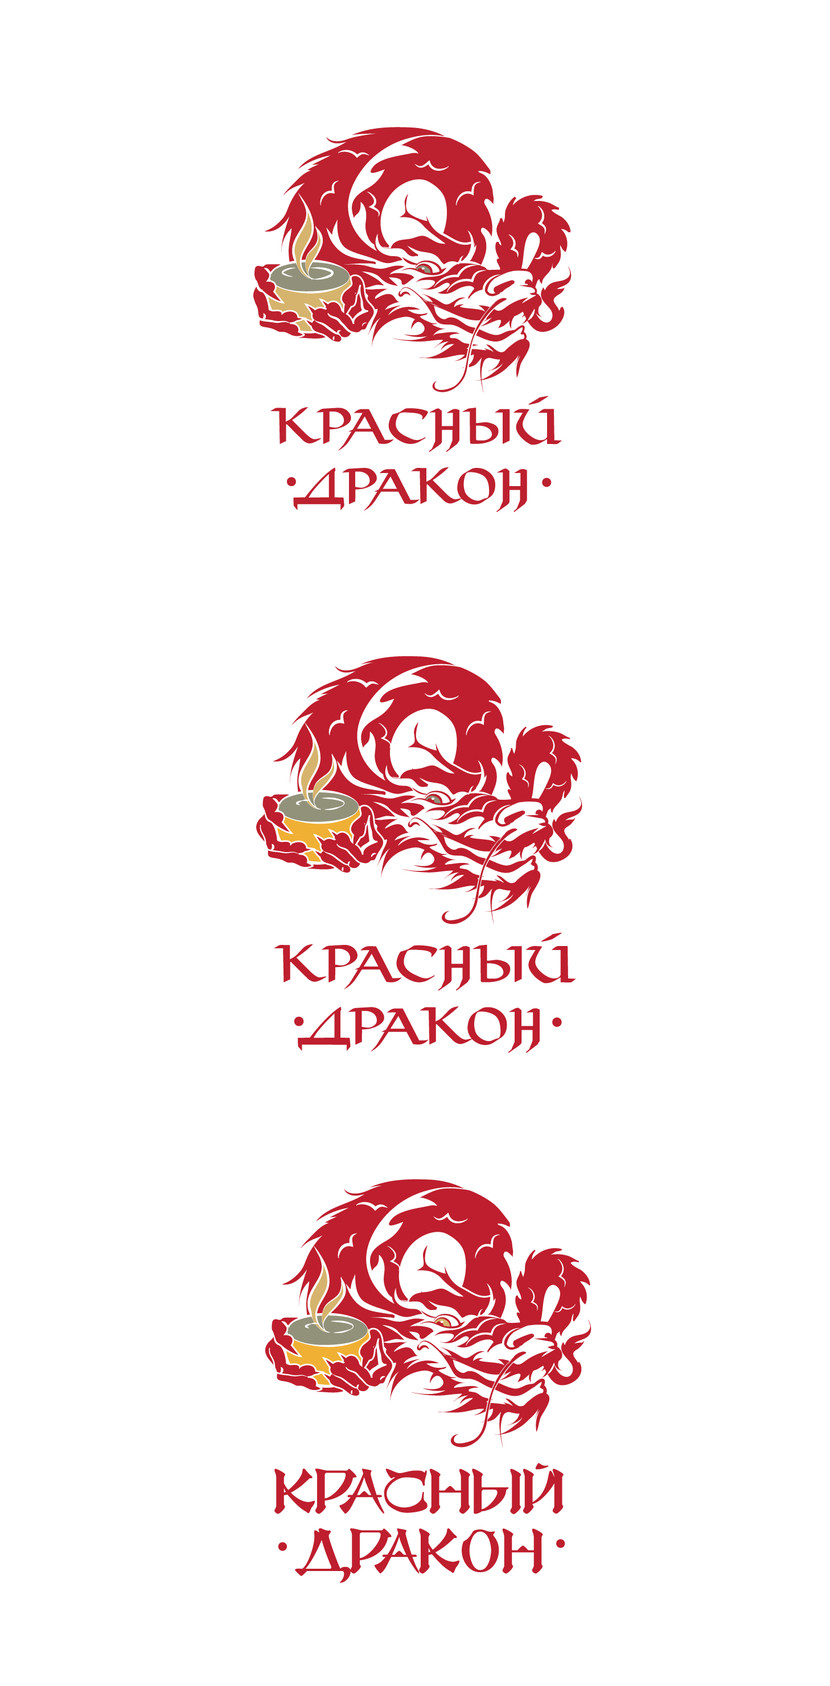 Если концепция вам нравится, после конкурса готова доводить работу до идеала при личной переписке. - Разработка логотипы для чайного магазина "Красный Дракон"